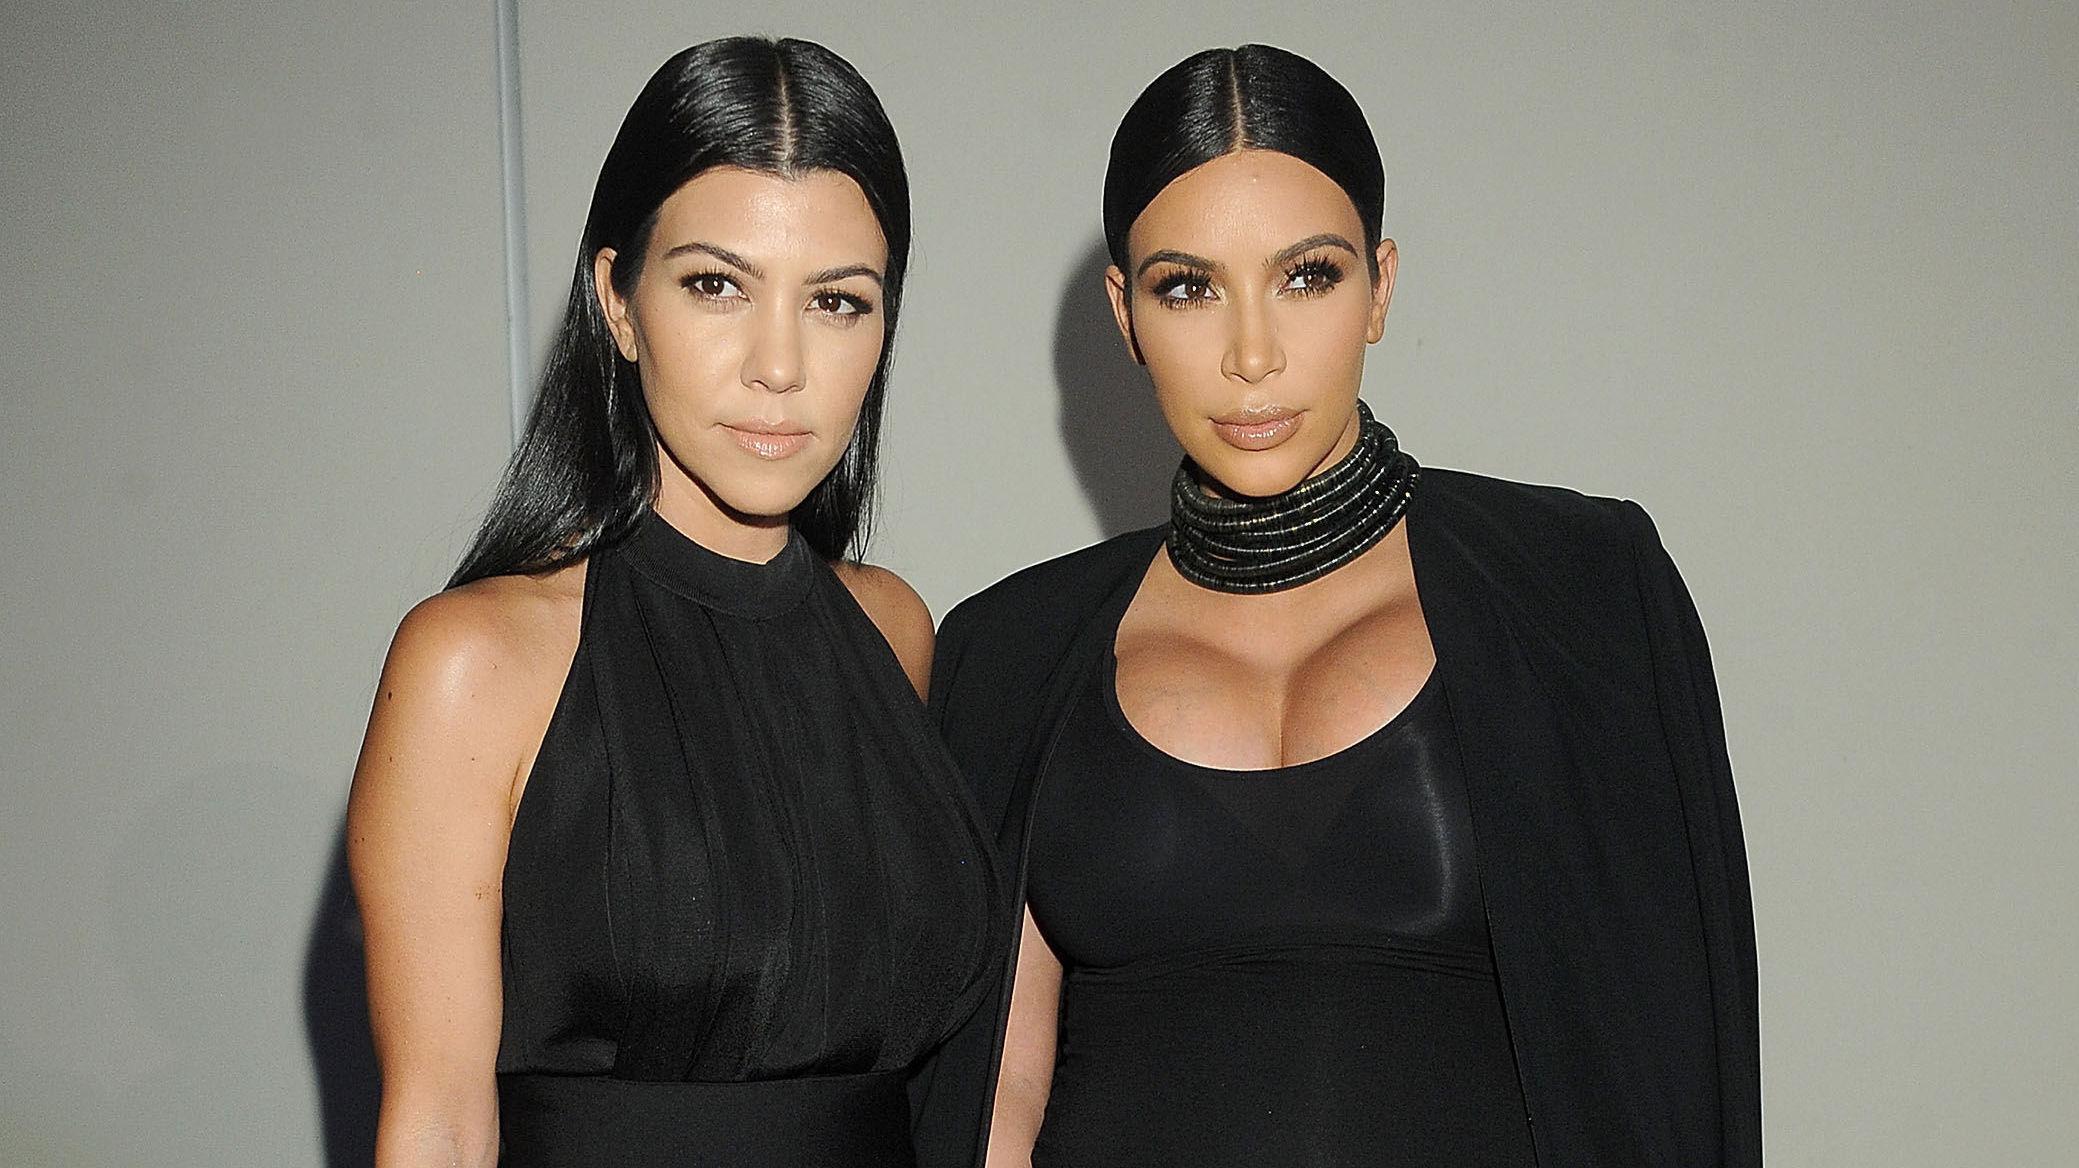 SØSTRENE SISTERS: Kourtney Kardashians antrekk kom i skyggen av Kims vågale utringning da familien feiret at Cosmopolitan fyller 50 år. Foto: Getty Images